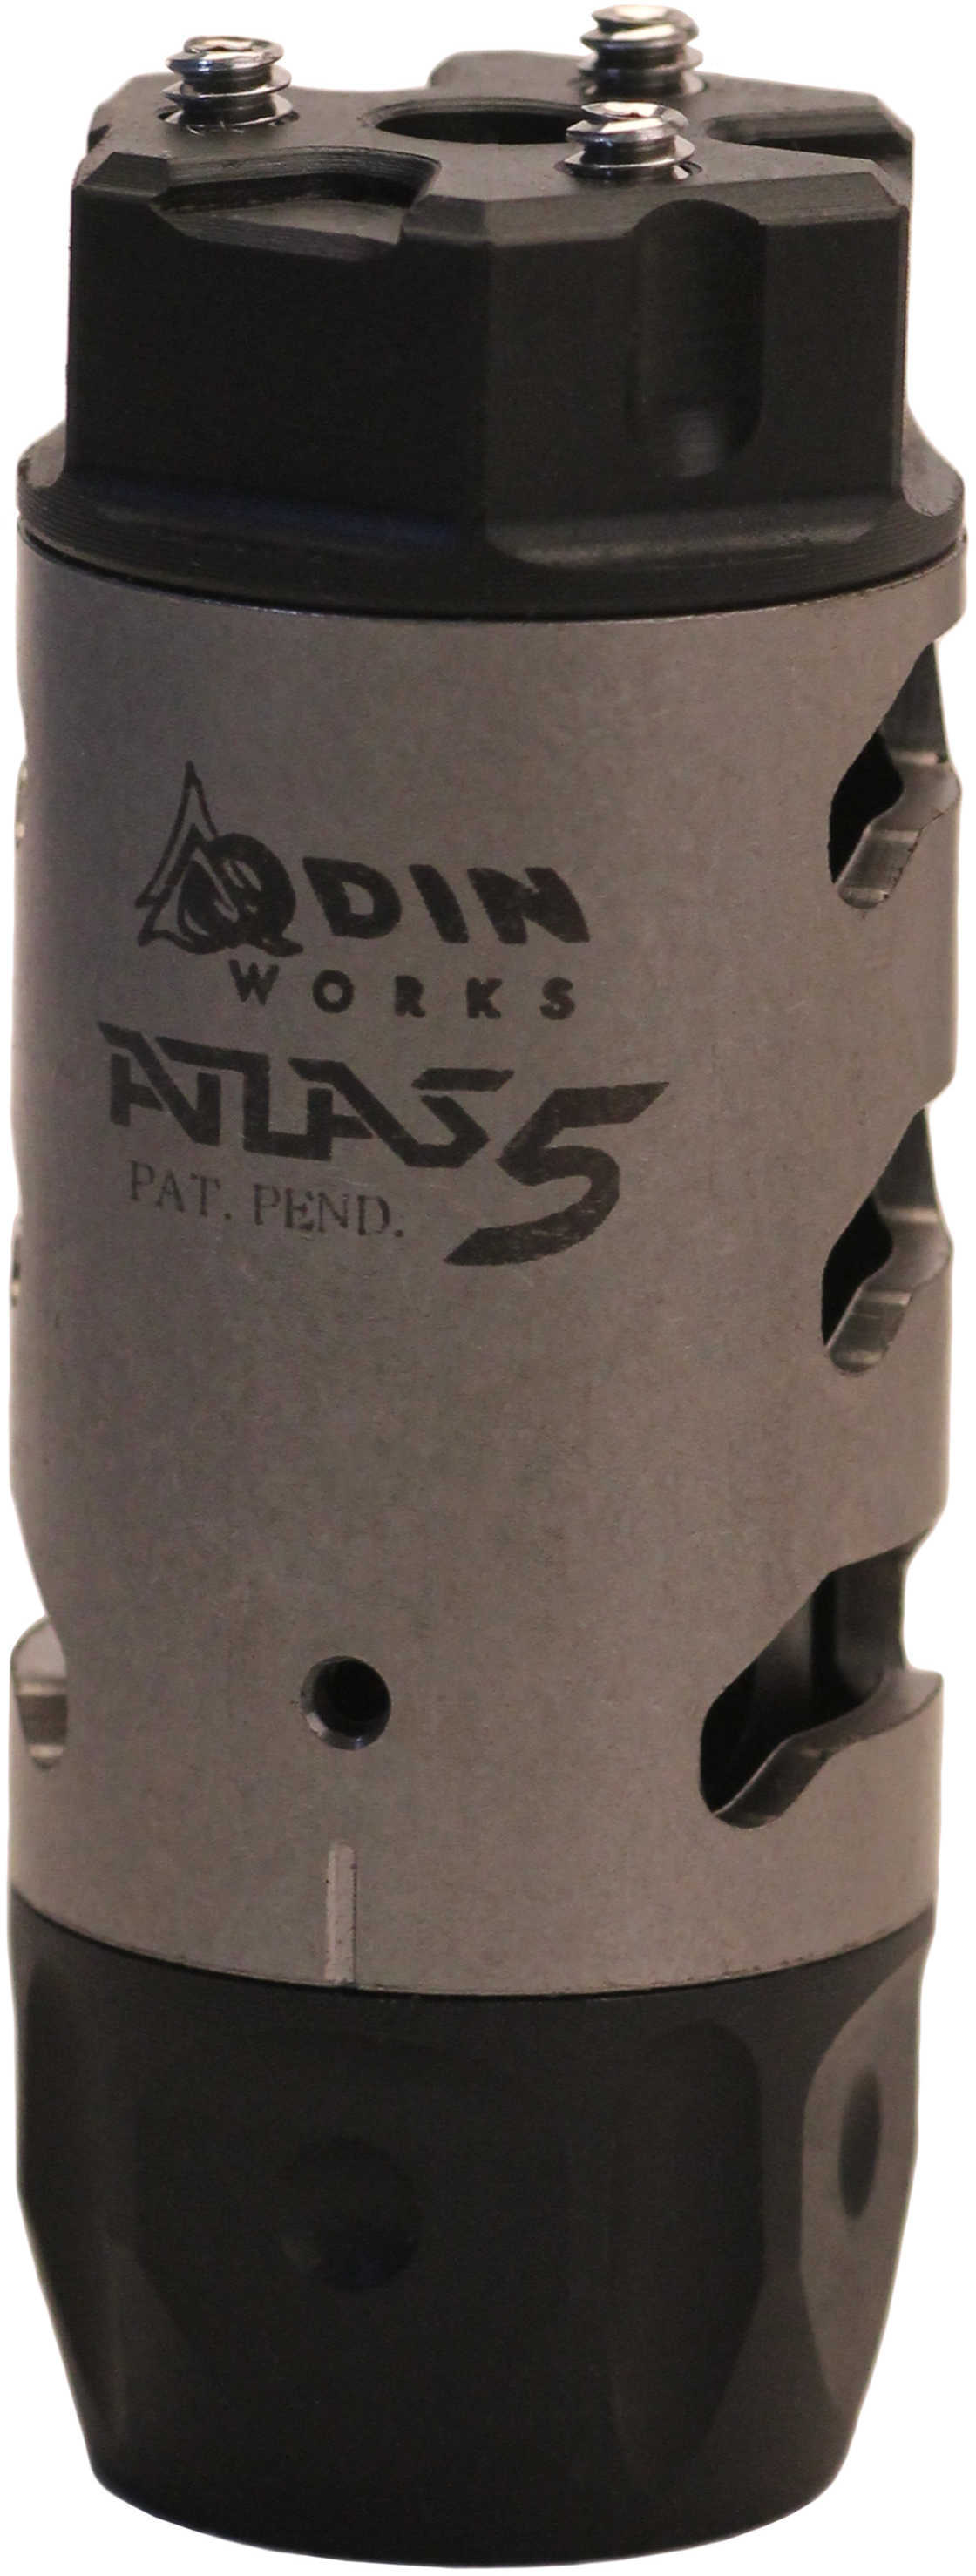 Odin Atlas 5 Compensator 5.56 (223 Cal) 1/2-28